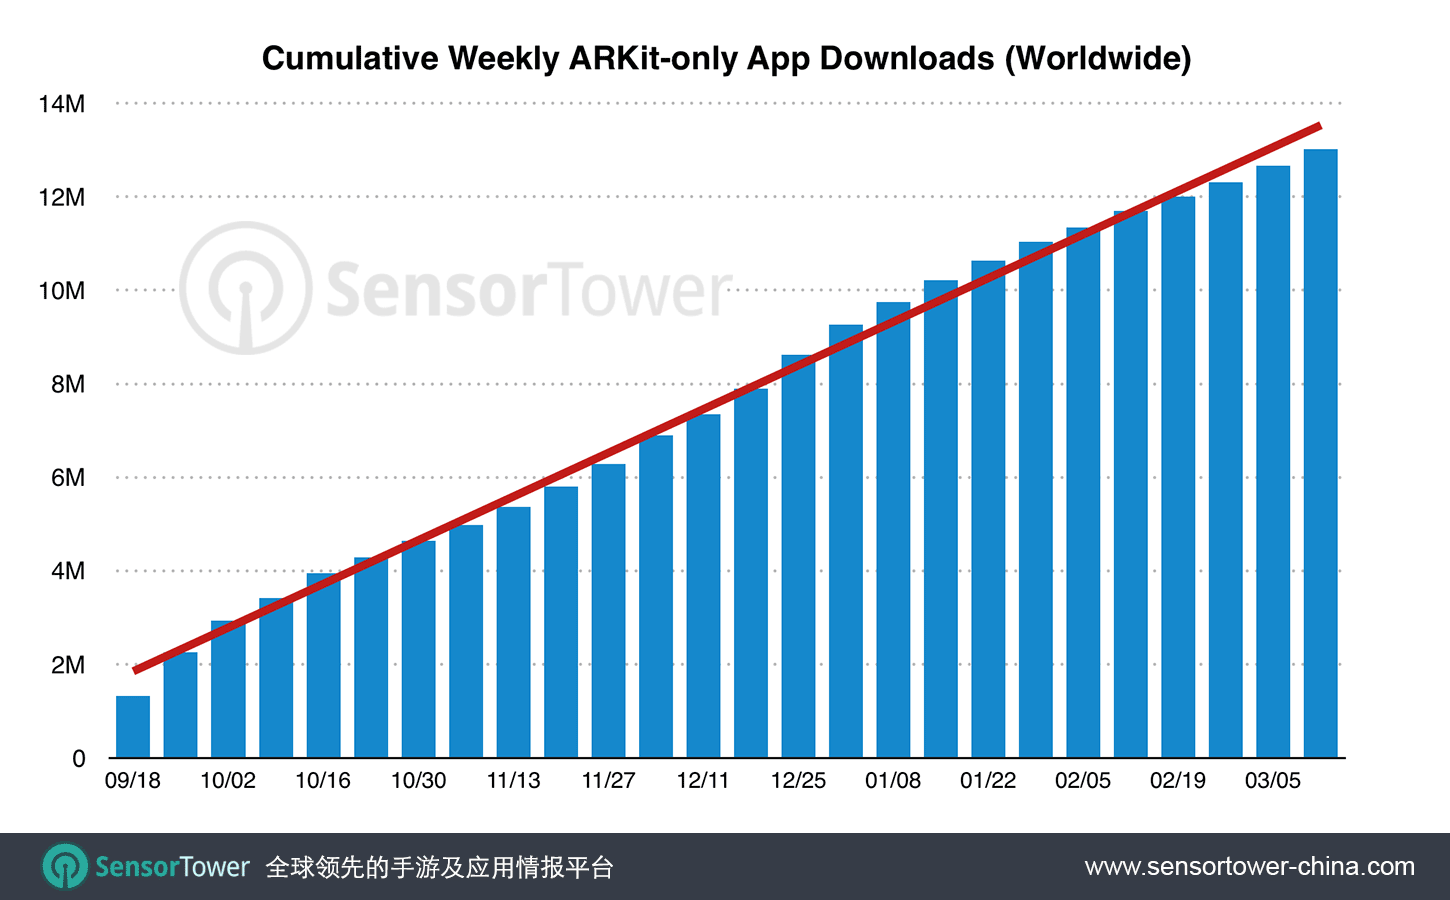 半年来基于ARKit开发的App下载超1300万次 近一半是游戏